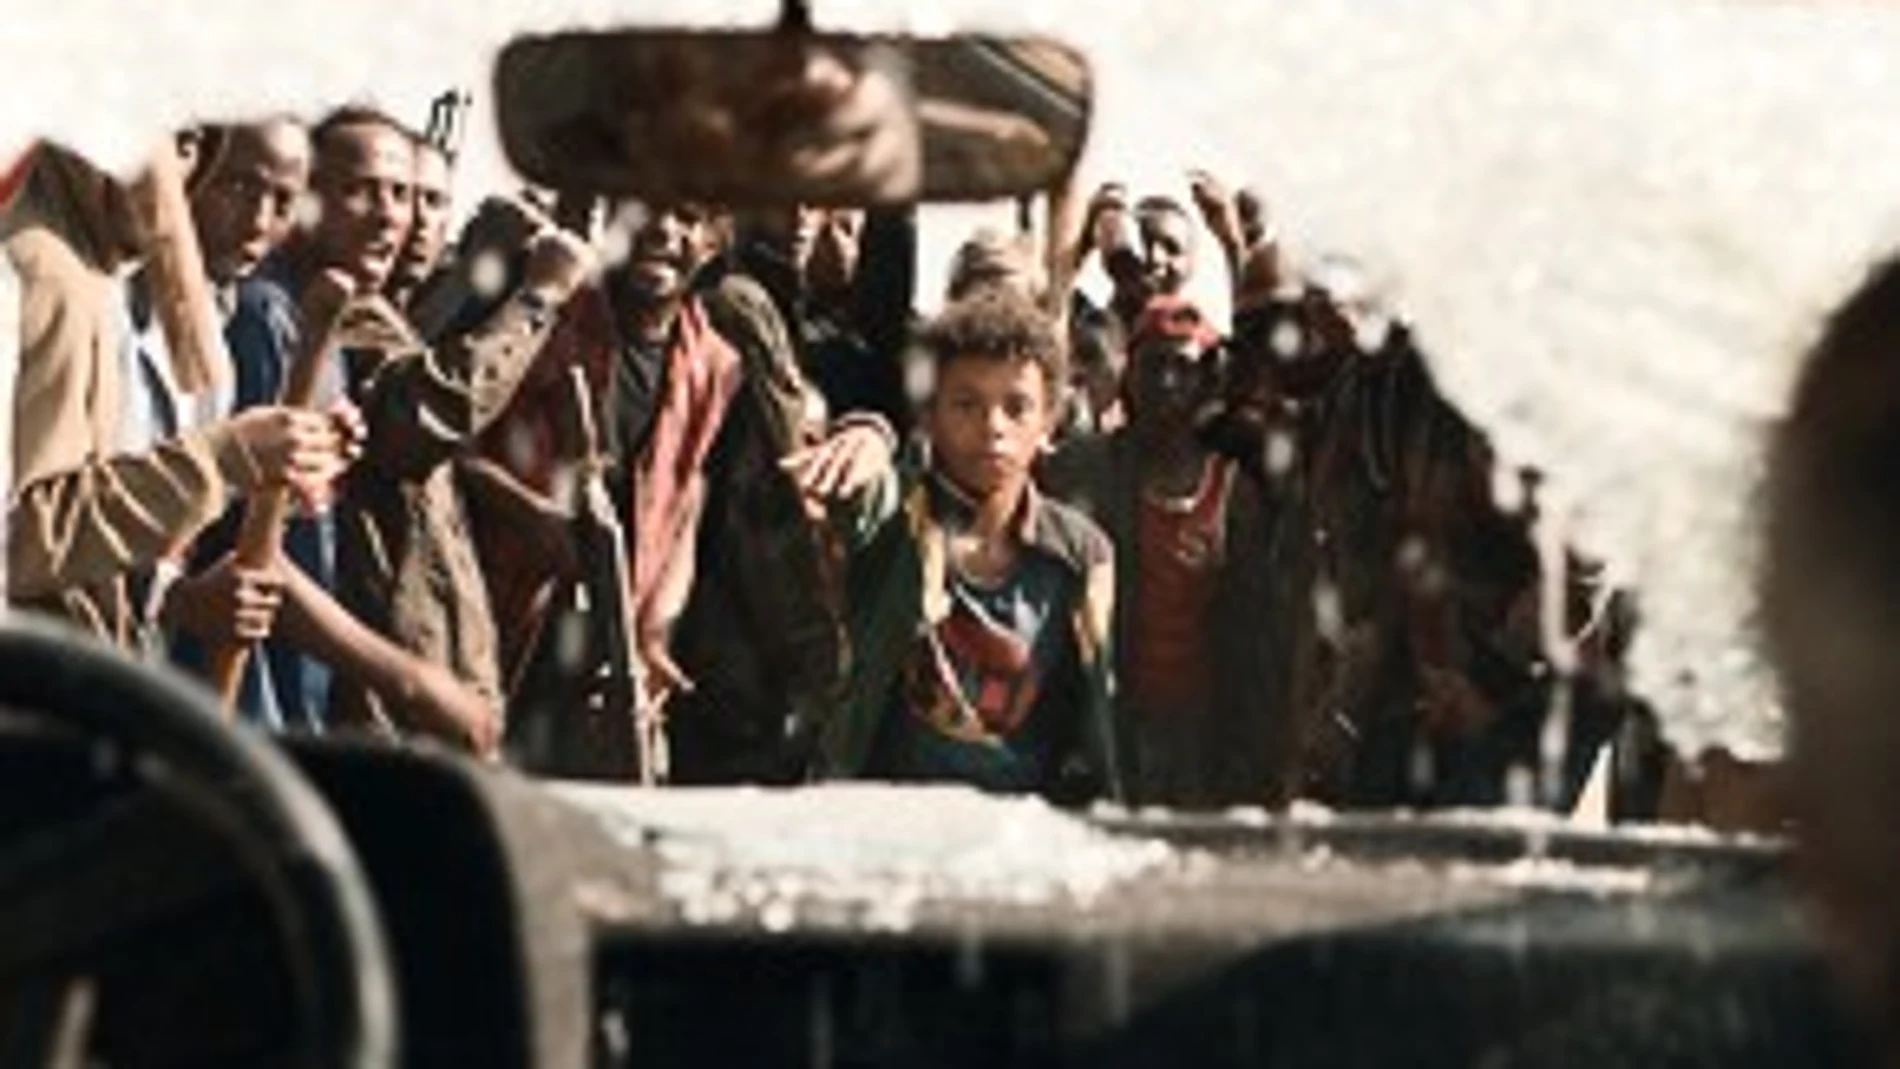 Escena de «Pequeño país», película dirigida por Éric Barbier que actualmente está en cartelera y que aborda el genocidio de Ruanda. Debajo, el autor del libro